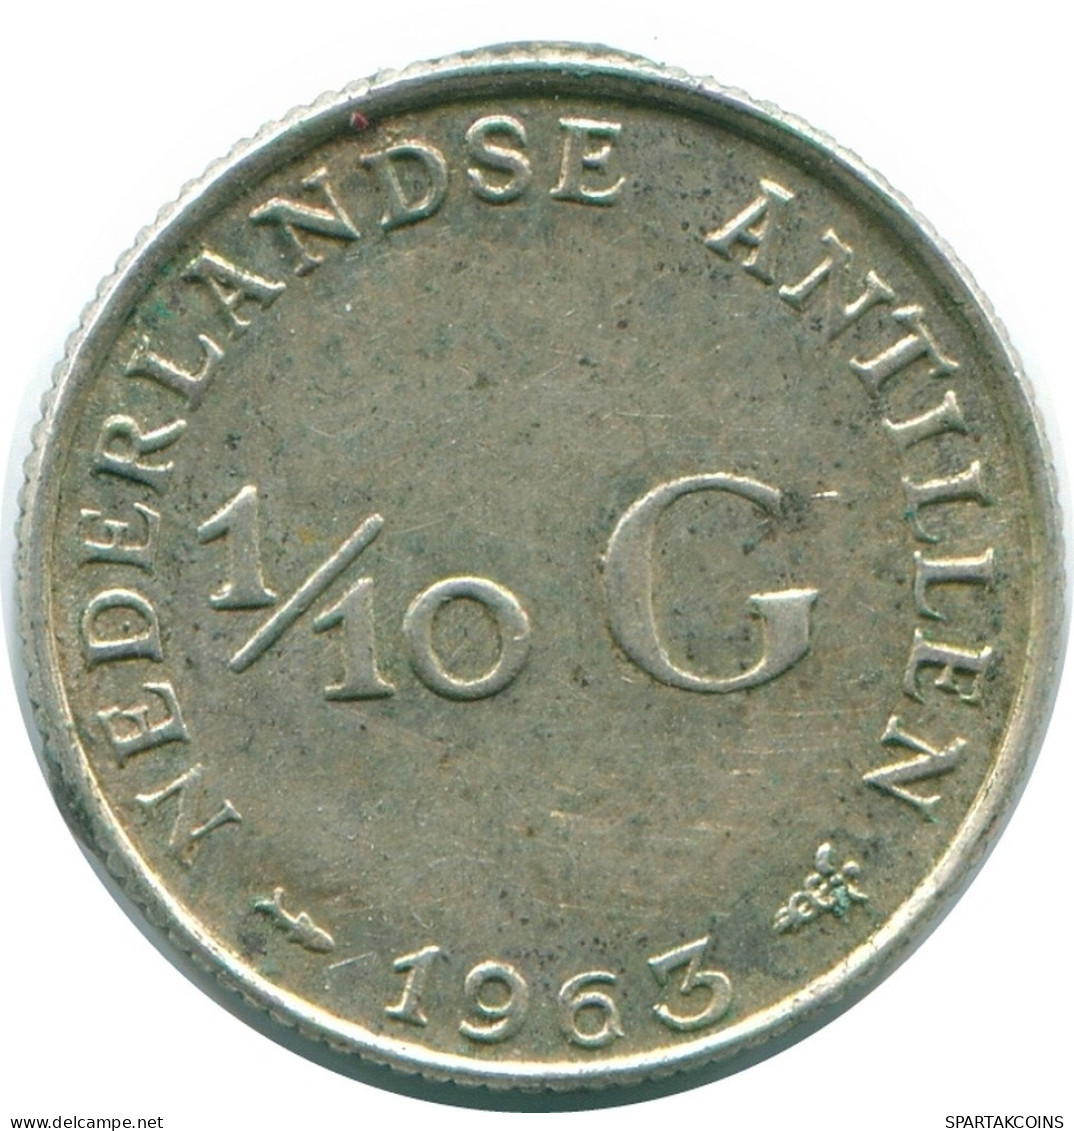 1/10 GULDEN 1963 NIEDERLÄNDISCHE ANTILLEN SILBER Koloniale Münze #NL12644.3.D.A - Antilles Néerlandaises